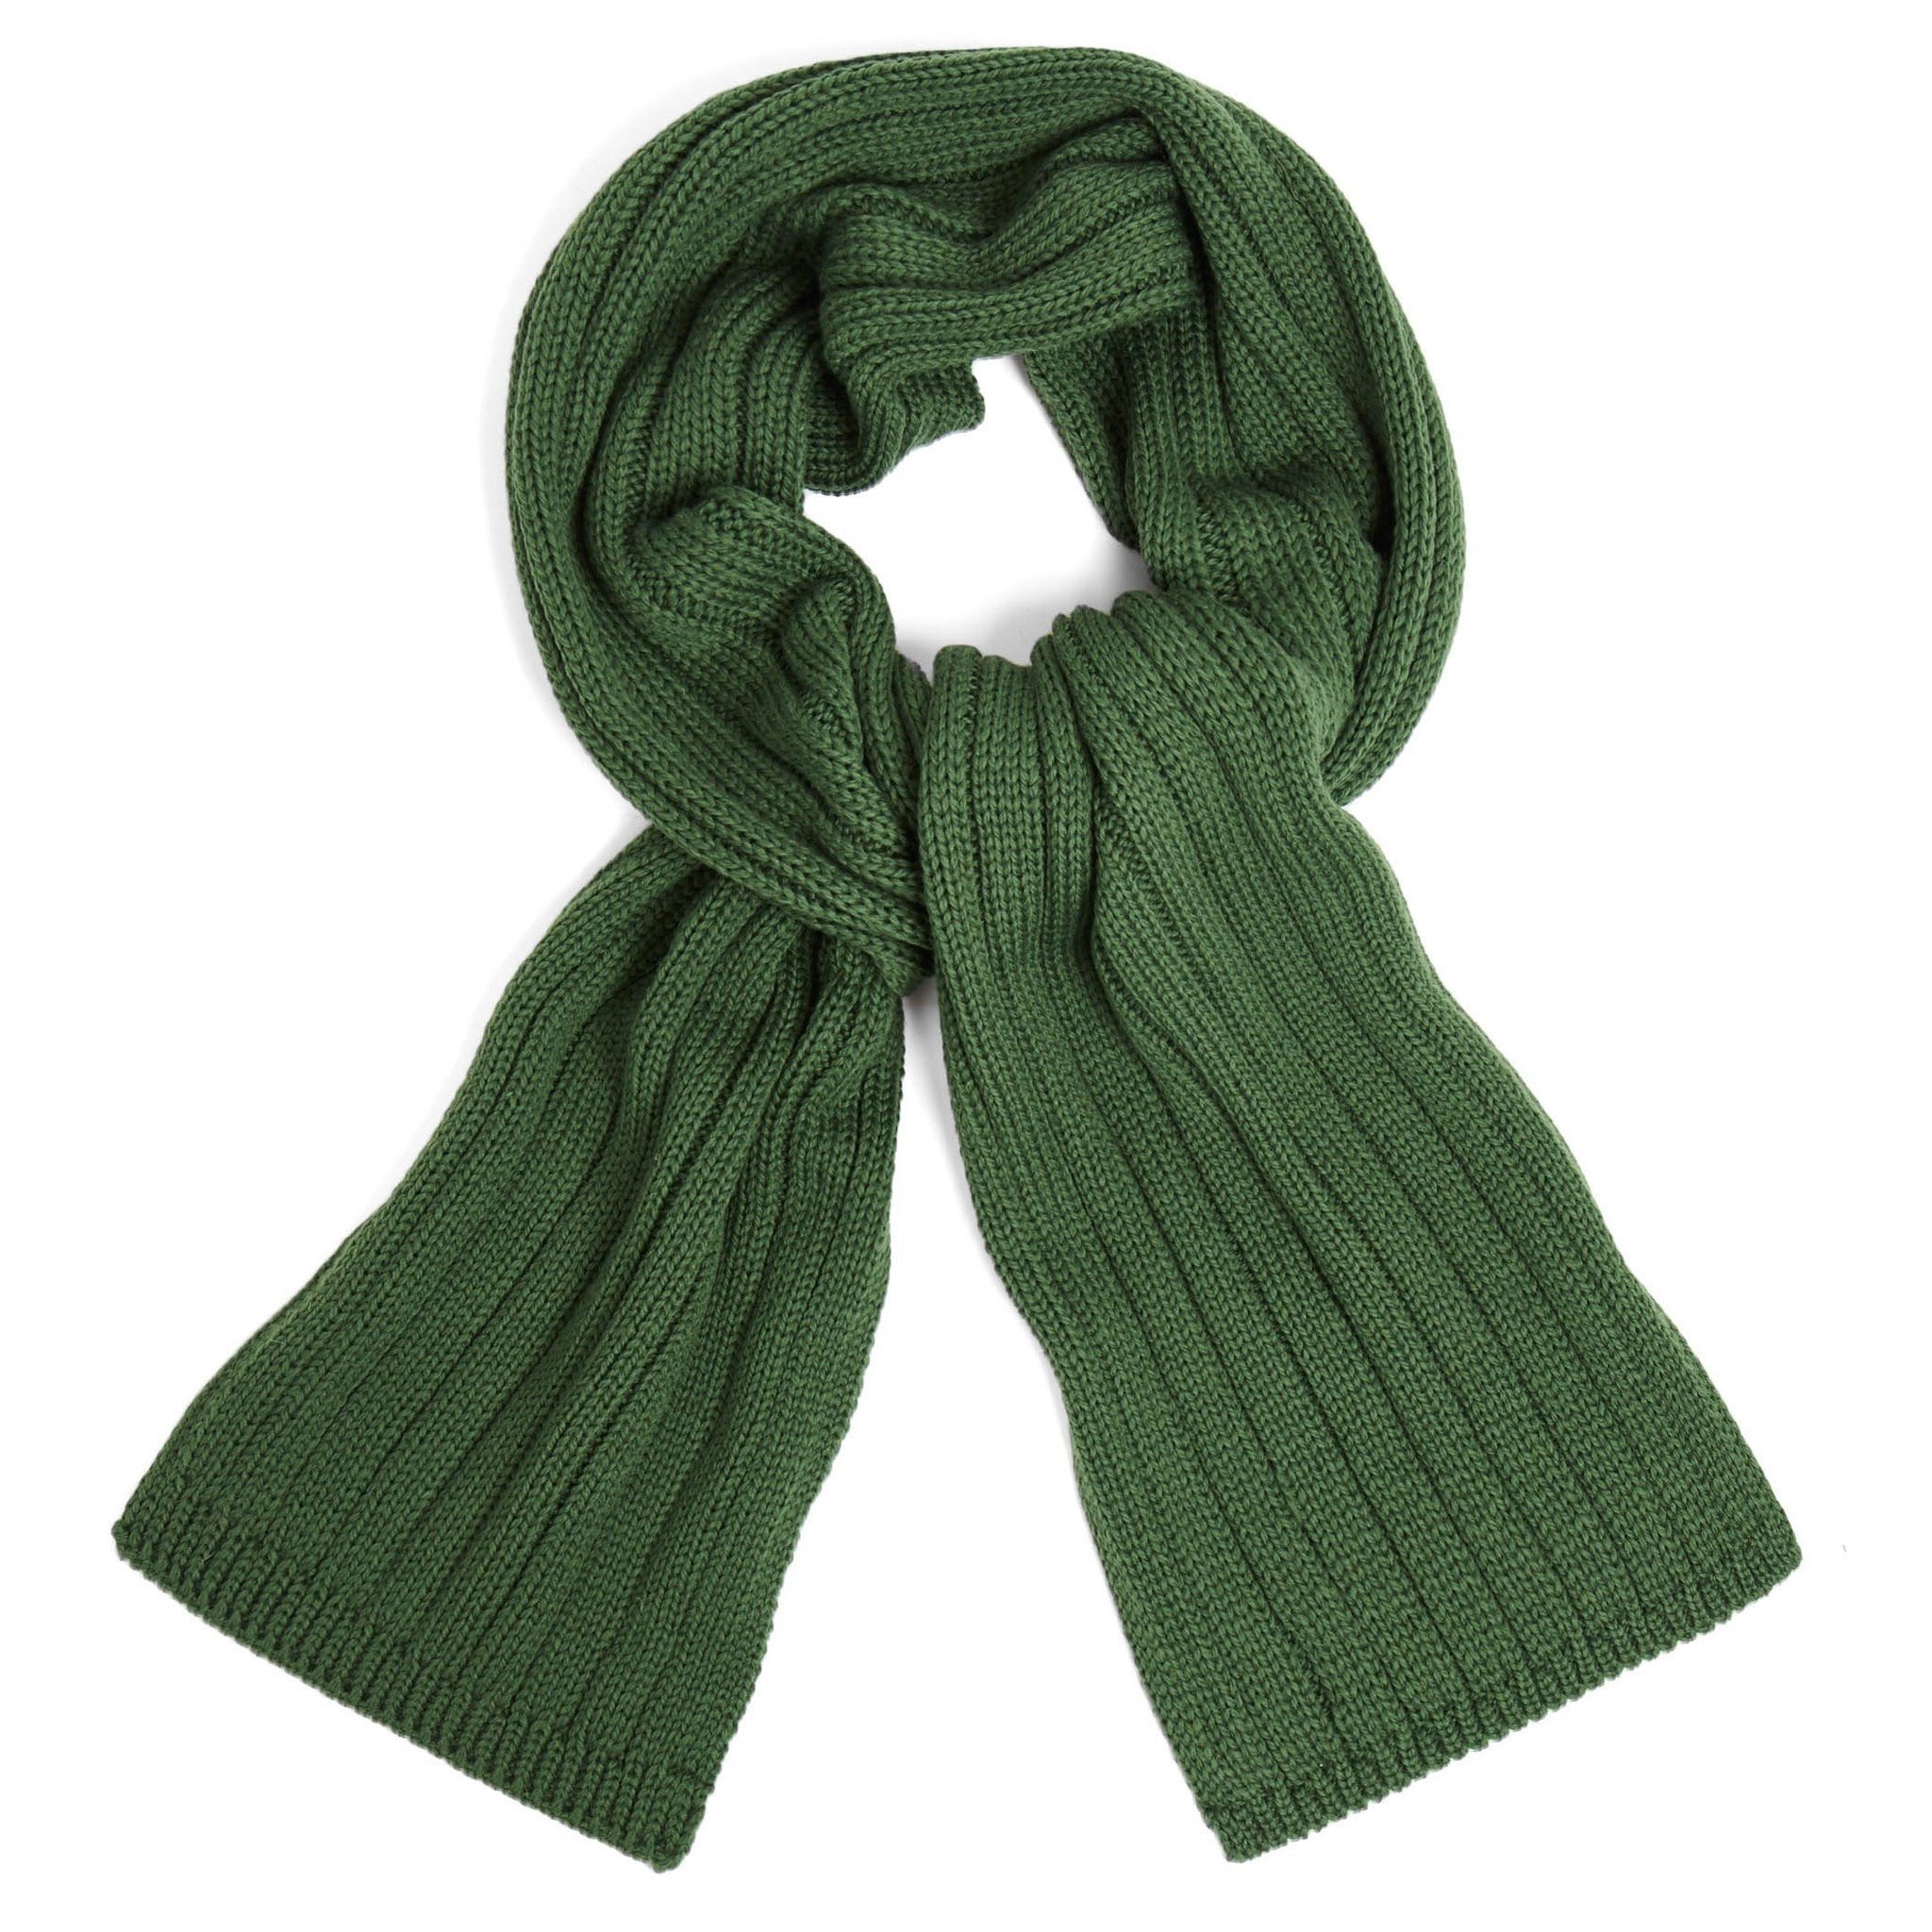 Green merino wool - SARTOR BOHEMIA